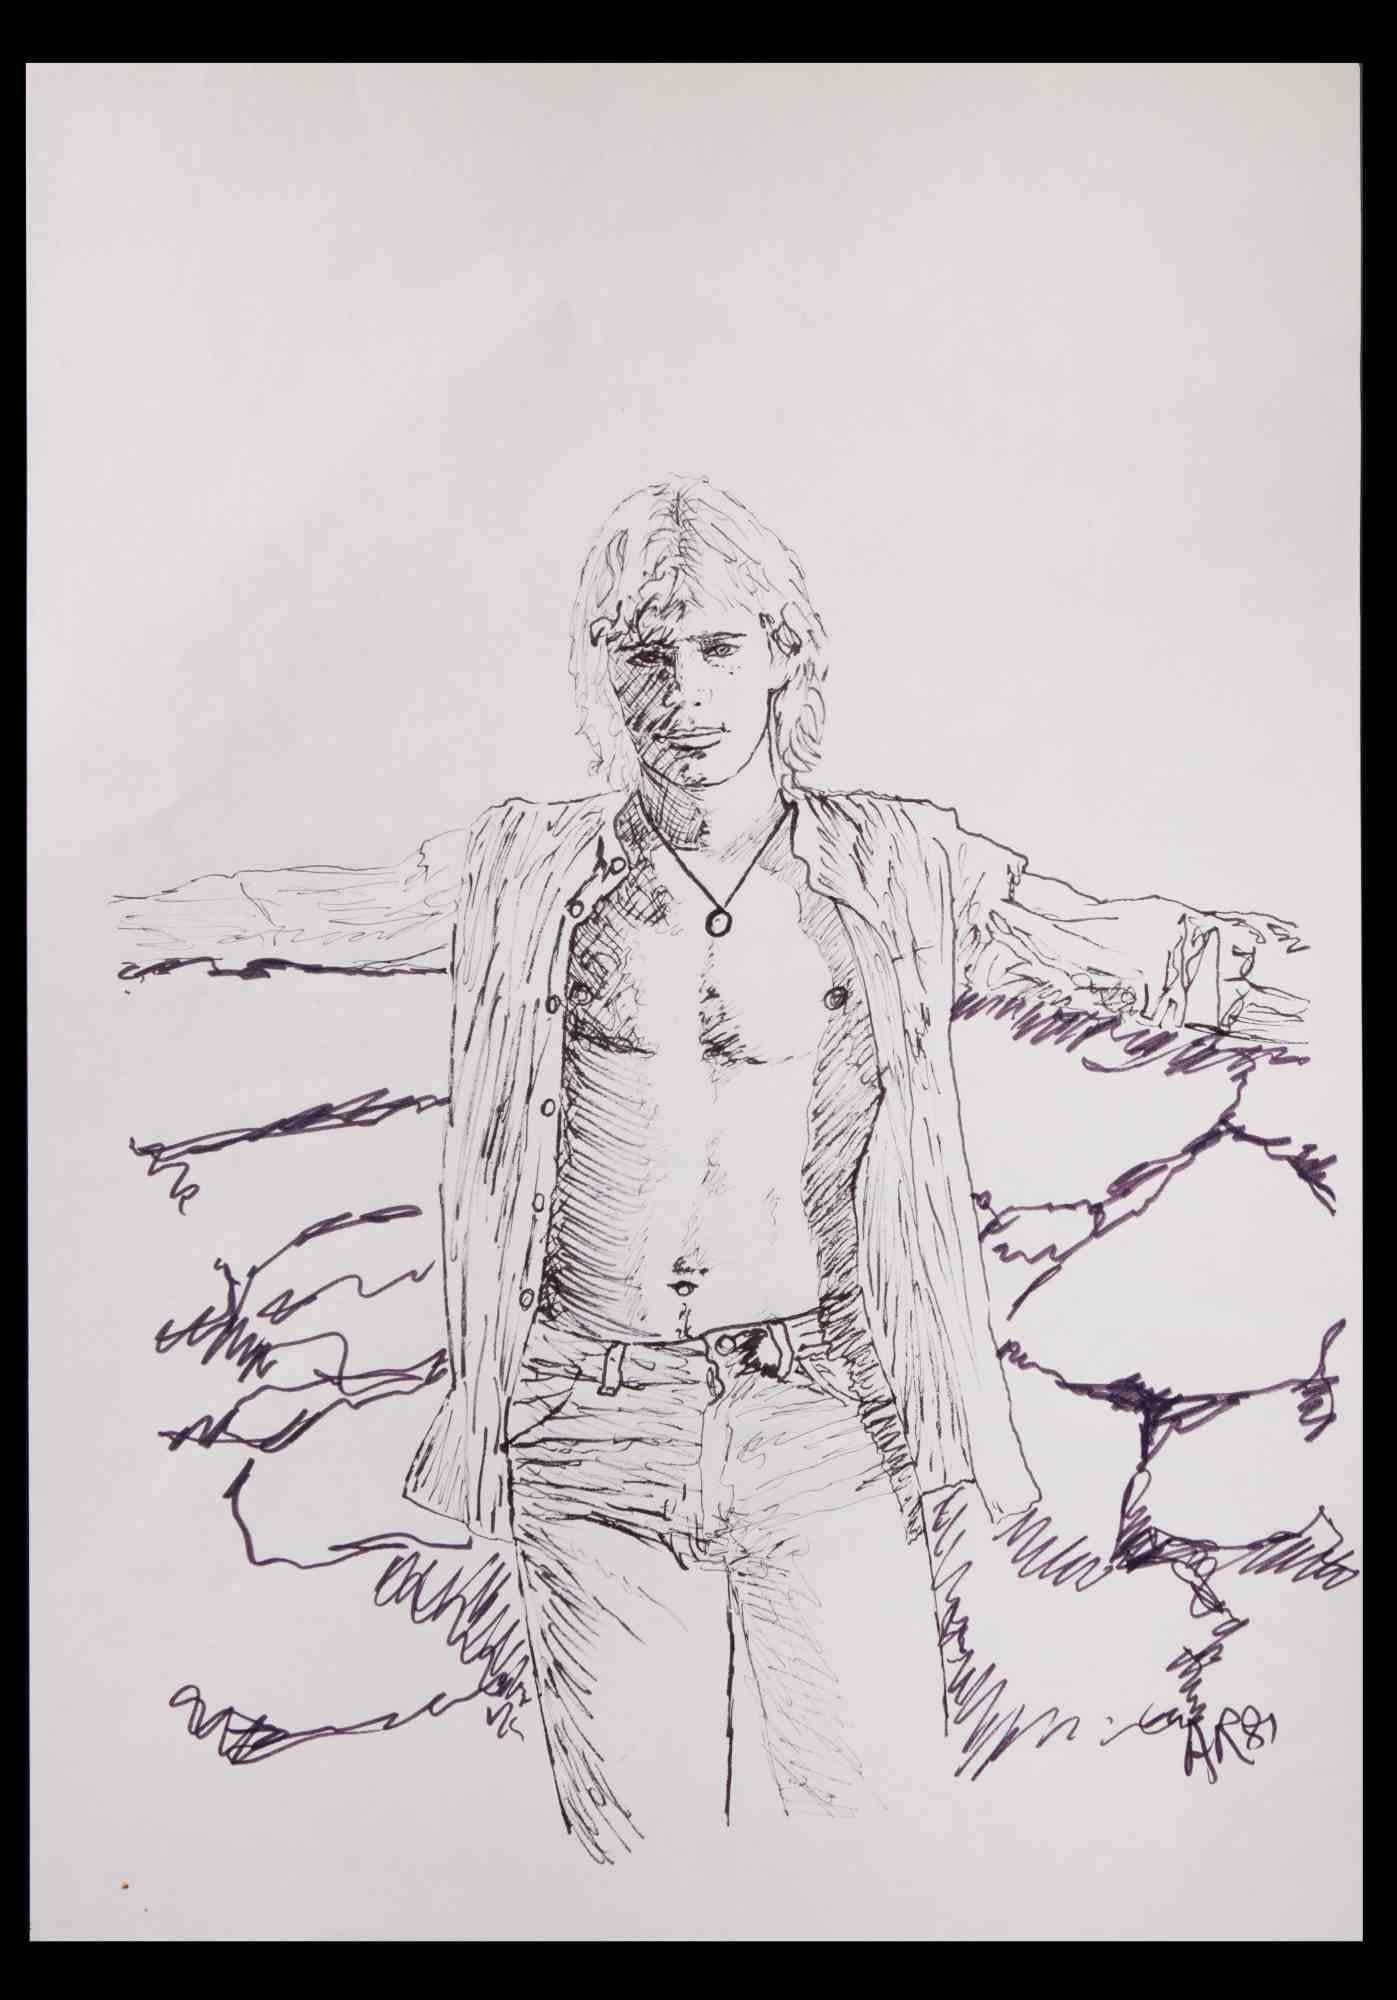 Portrait d'un garçon  est un dessin original au stylo réalisé par Anthony Roaland en 1981. Signé et daté par l'artiste dans la marge inférieure droite. 

Au premier plan, le garçon est représenté avec un visage mystérieux et intriguant.

Bonnes